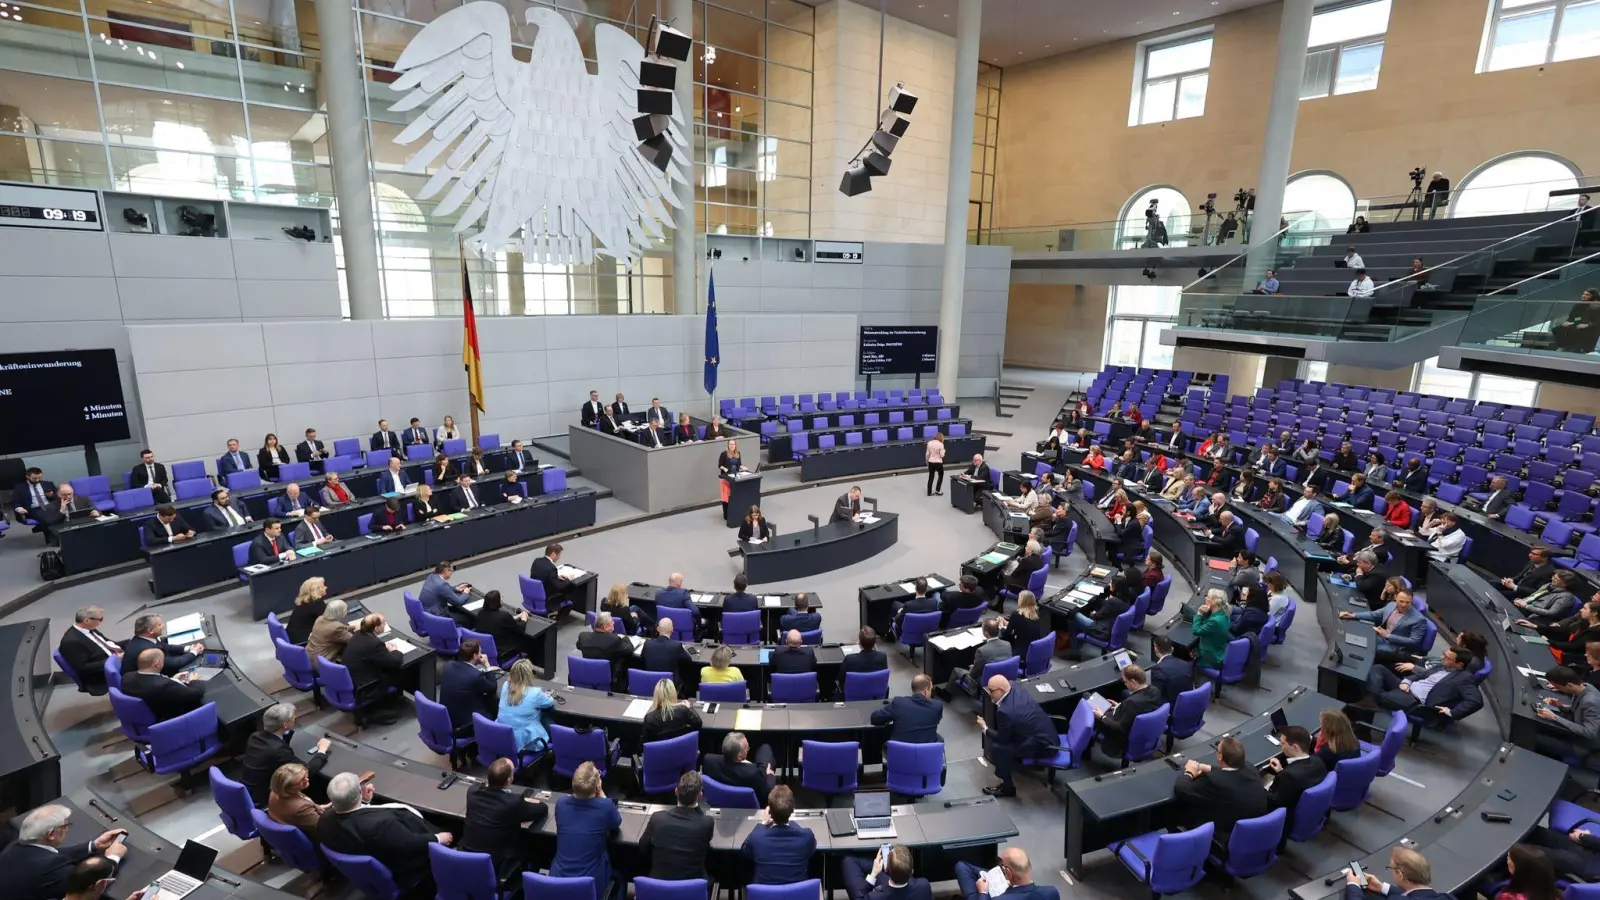 Blick in eine Sitzung des Deutschen Bundestages im Plenarsaal des Reichstagsgebäudes. (Foto: Jörg Carstensen/dpa)